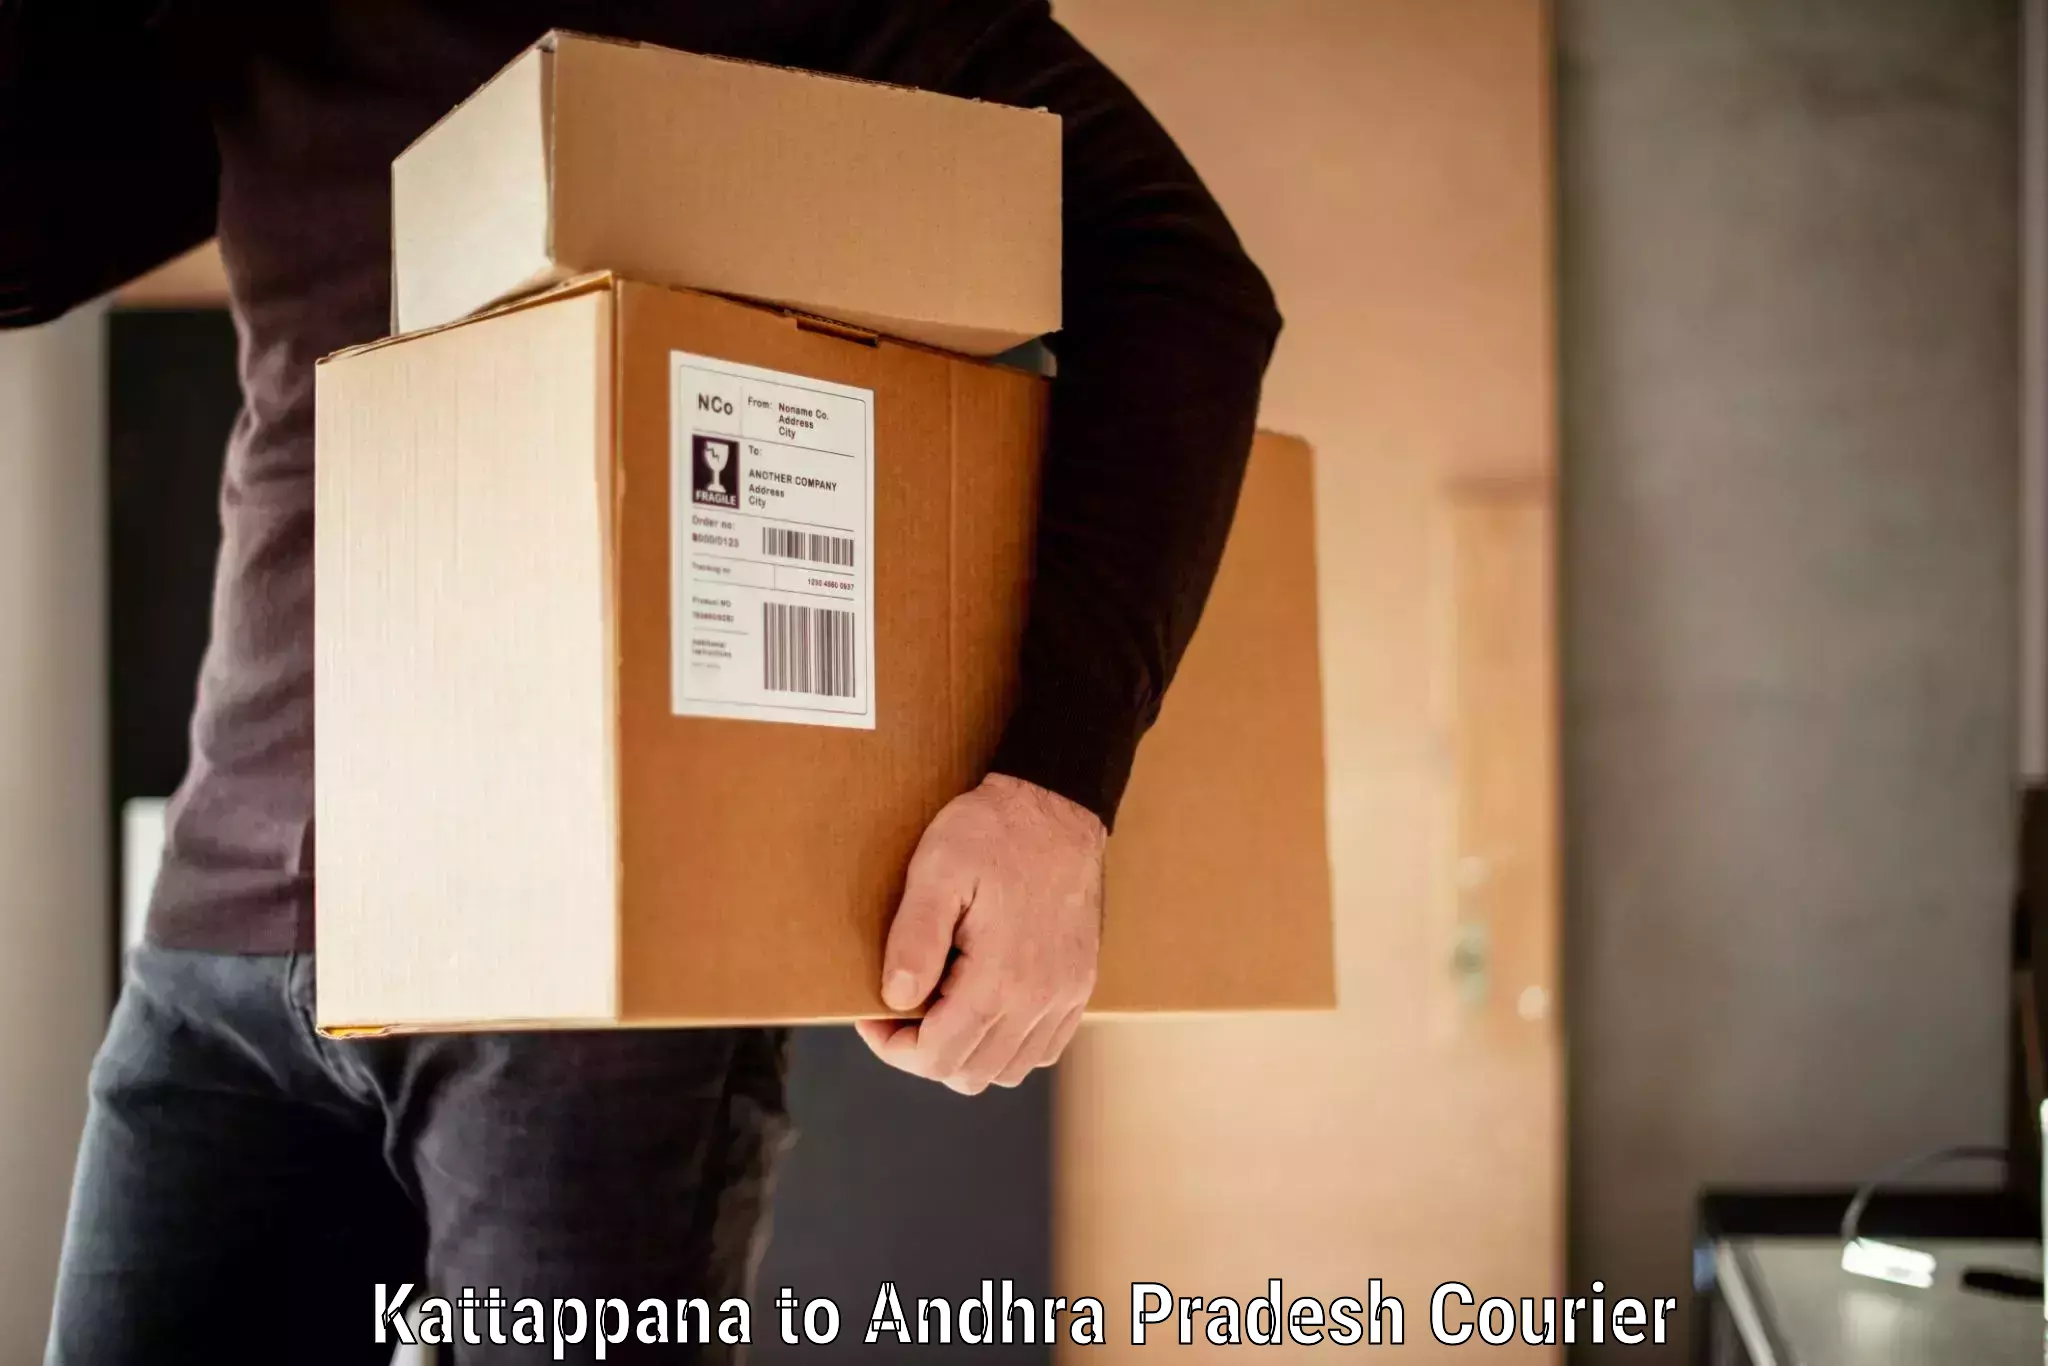 Luggage dispatch service Kattappana to Srungavarapukota SKota